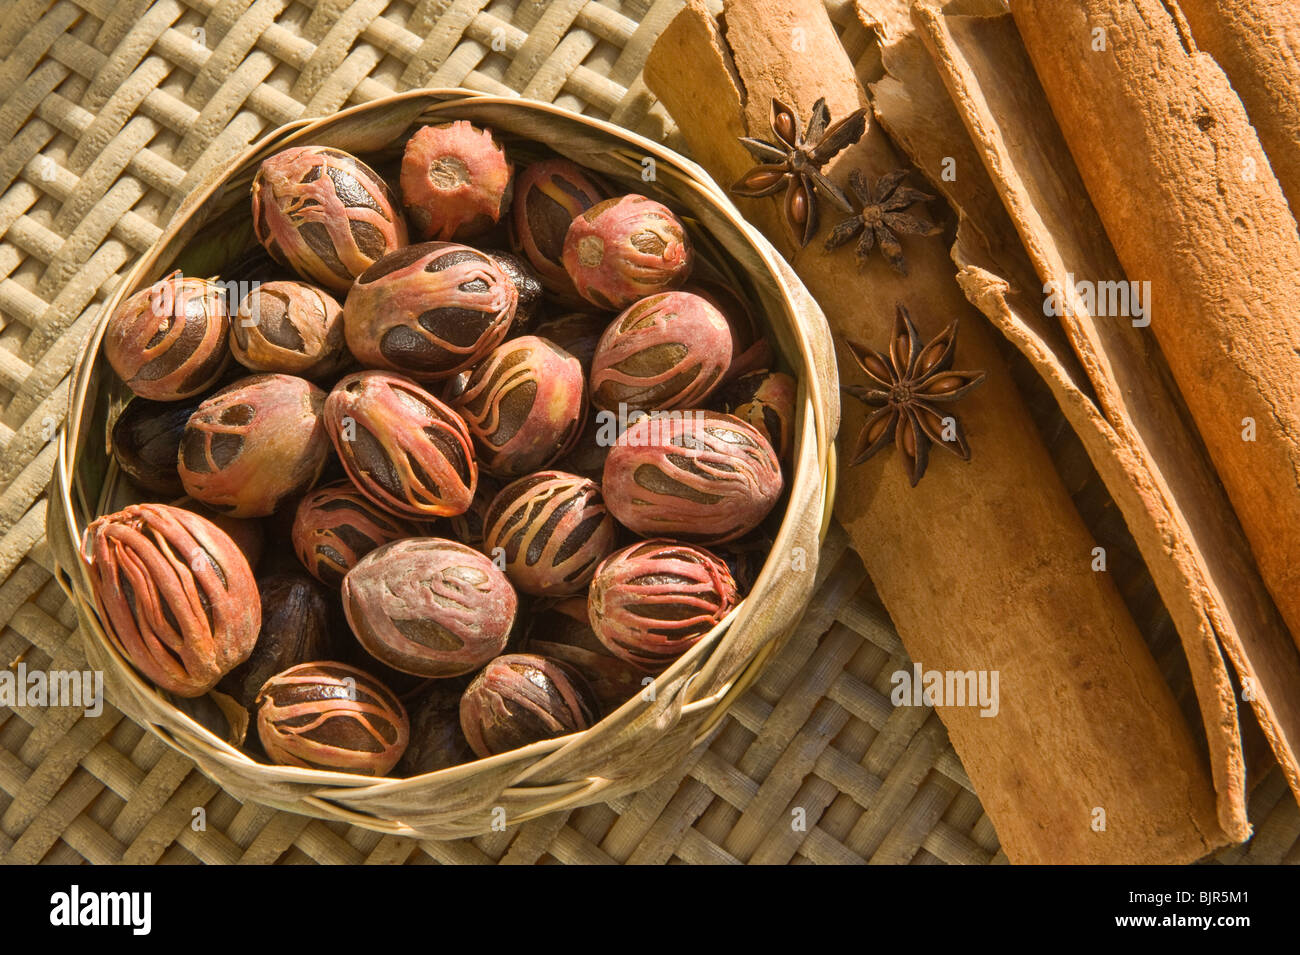 Épices : muscade, le macis, cannelle et anis étoilé dans un panier tissé à partir de feuilles de cocotier par un artisan local Sainte-lucie Caraïbes Banque D'Images